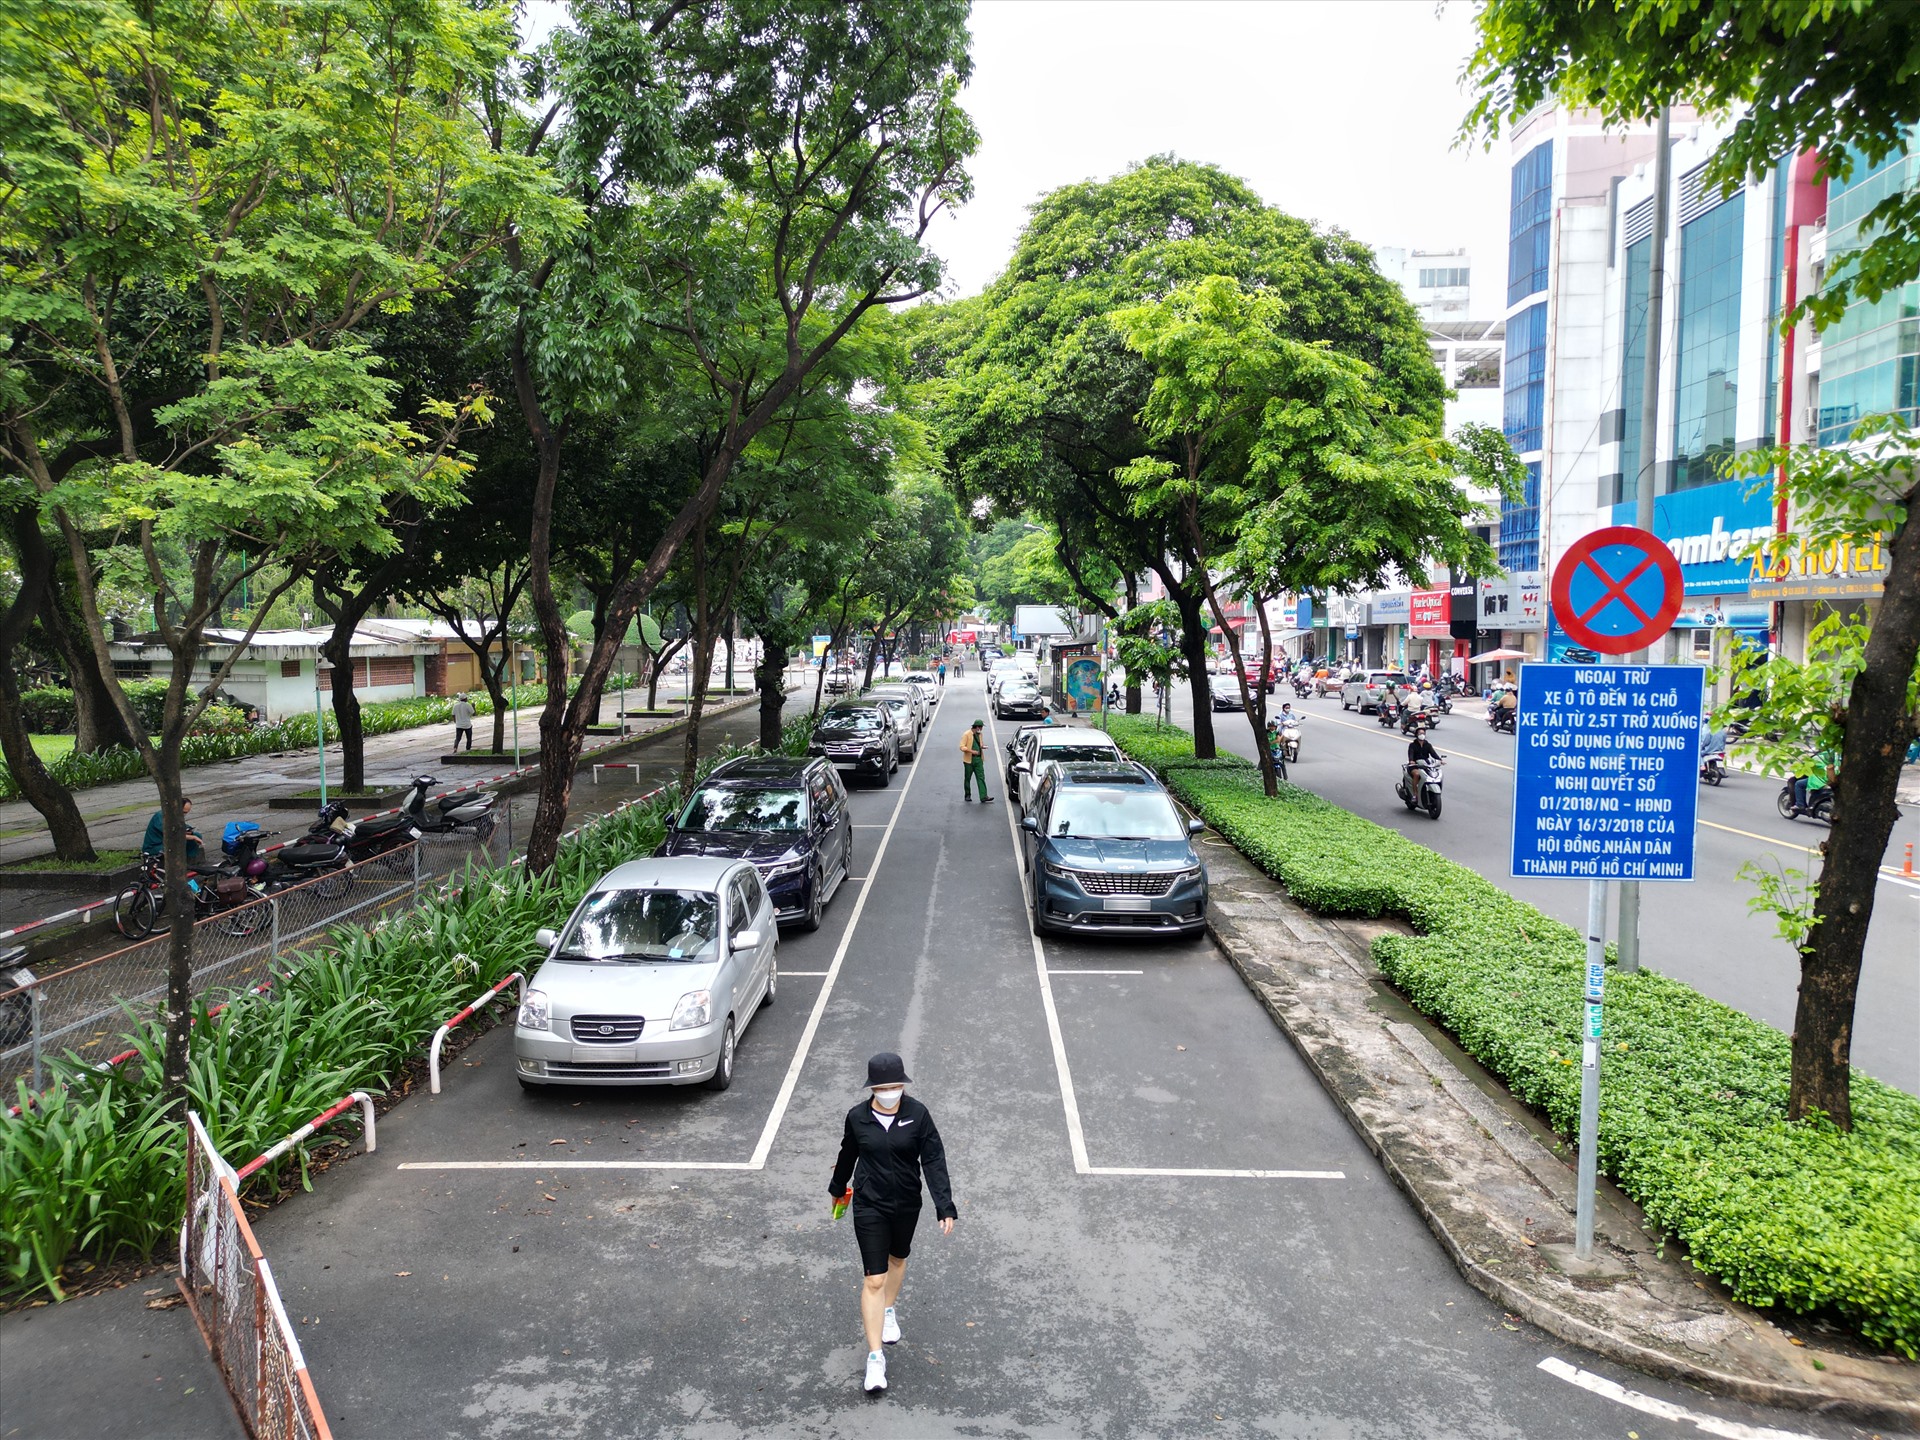 Vị trí thứ nhất là trước Công viên Lê Văn Tám trên đường Hai Bà Trưng (đoạn từ đường Võ Thị Sáu đến đường Điện Biên Phủ, Quận 1). Hiện tại, nơi này đang tổ chức đậu xe có thu phí.